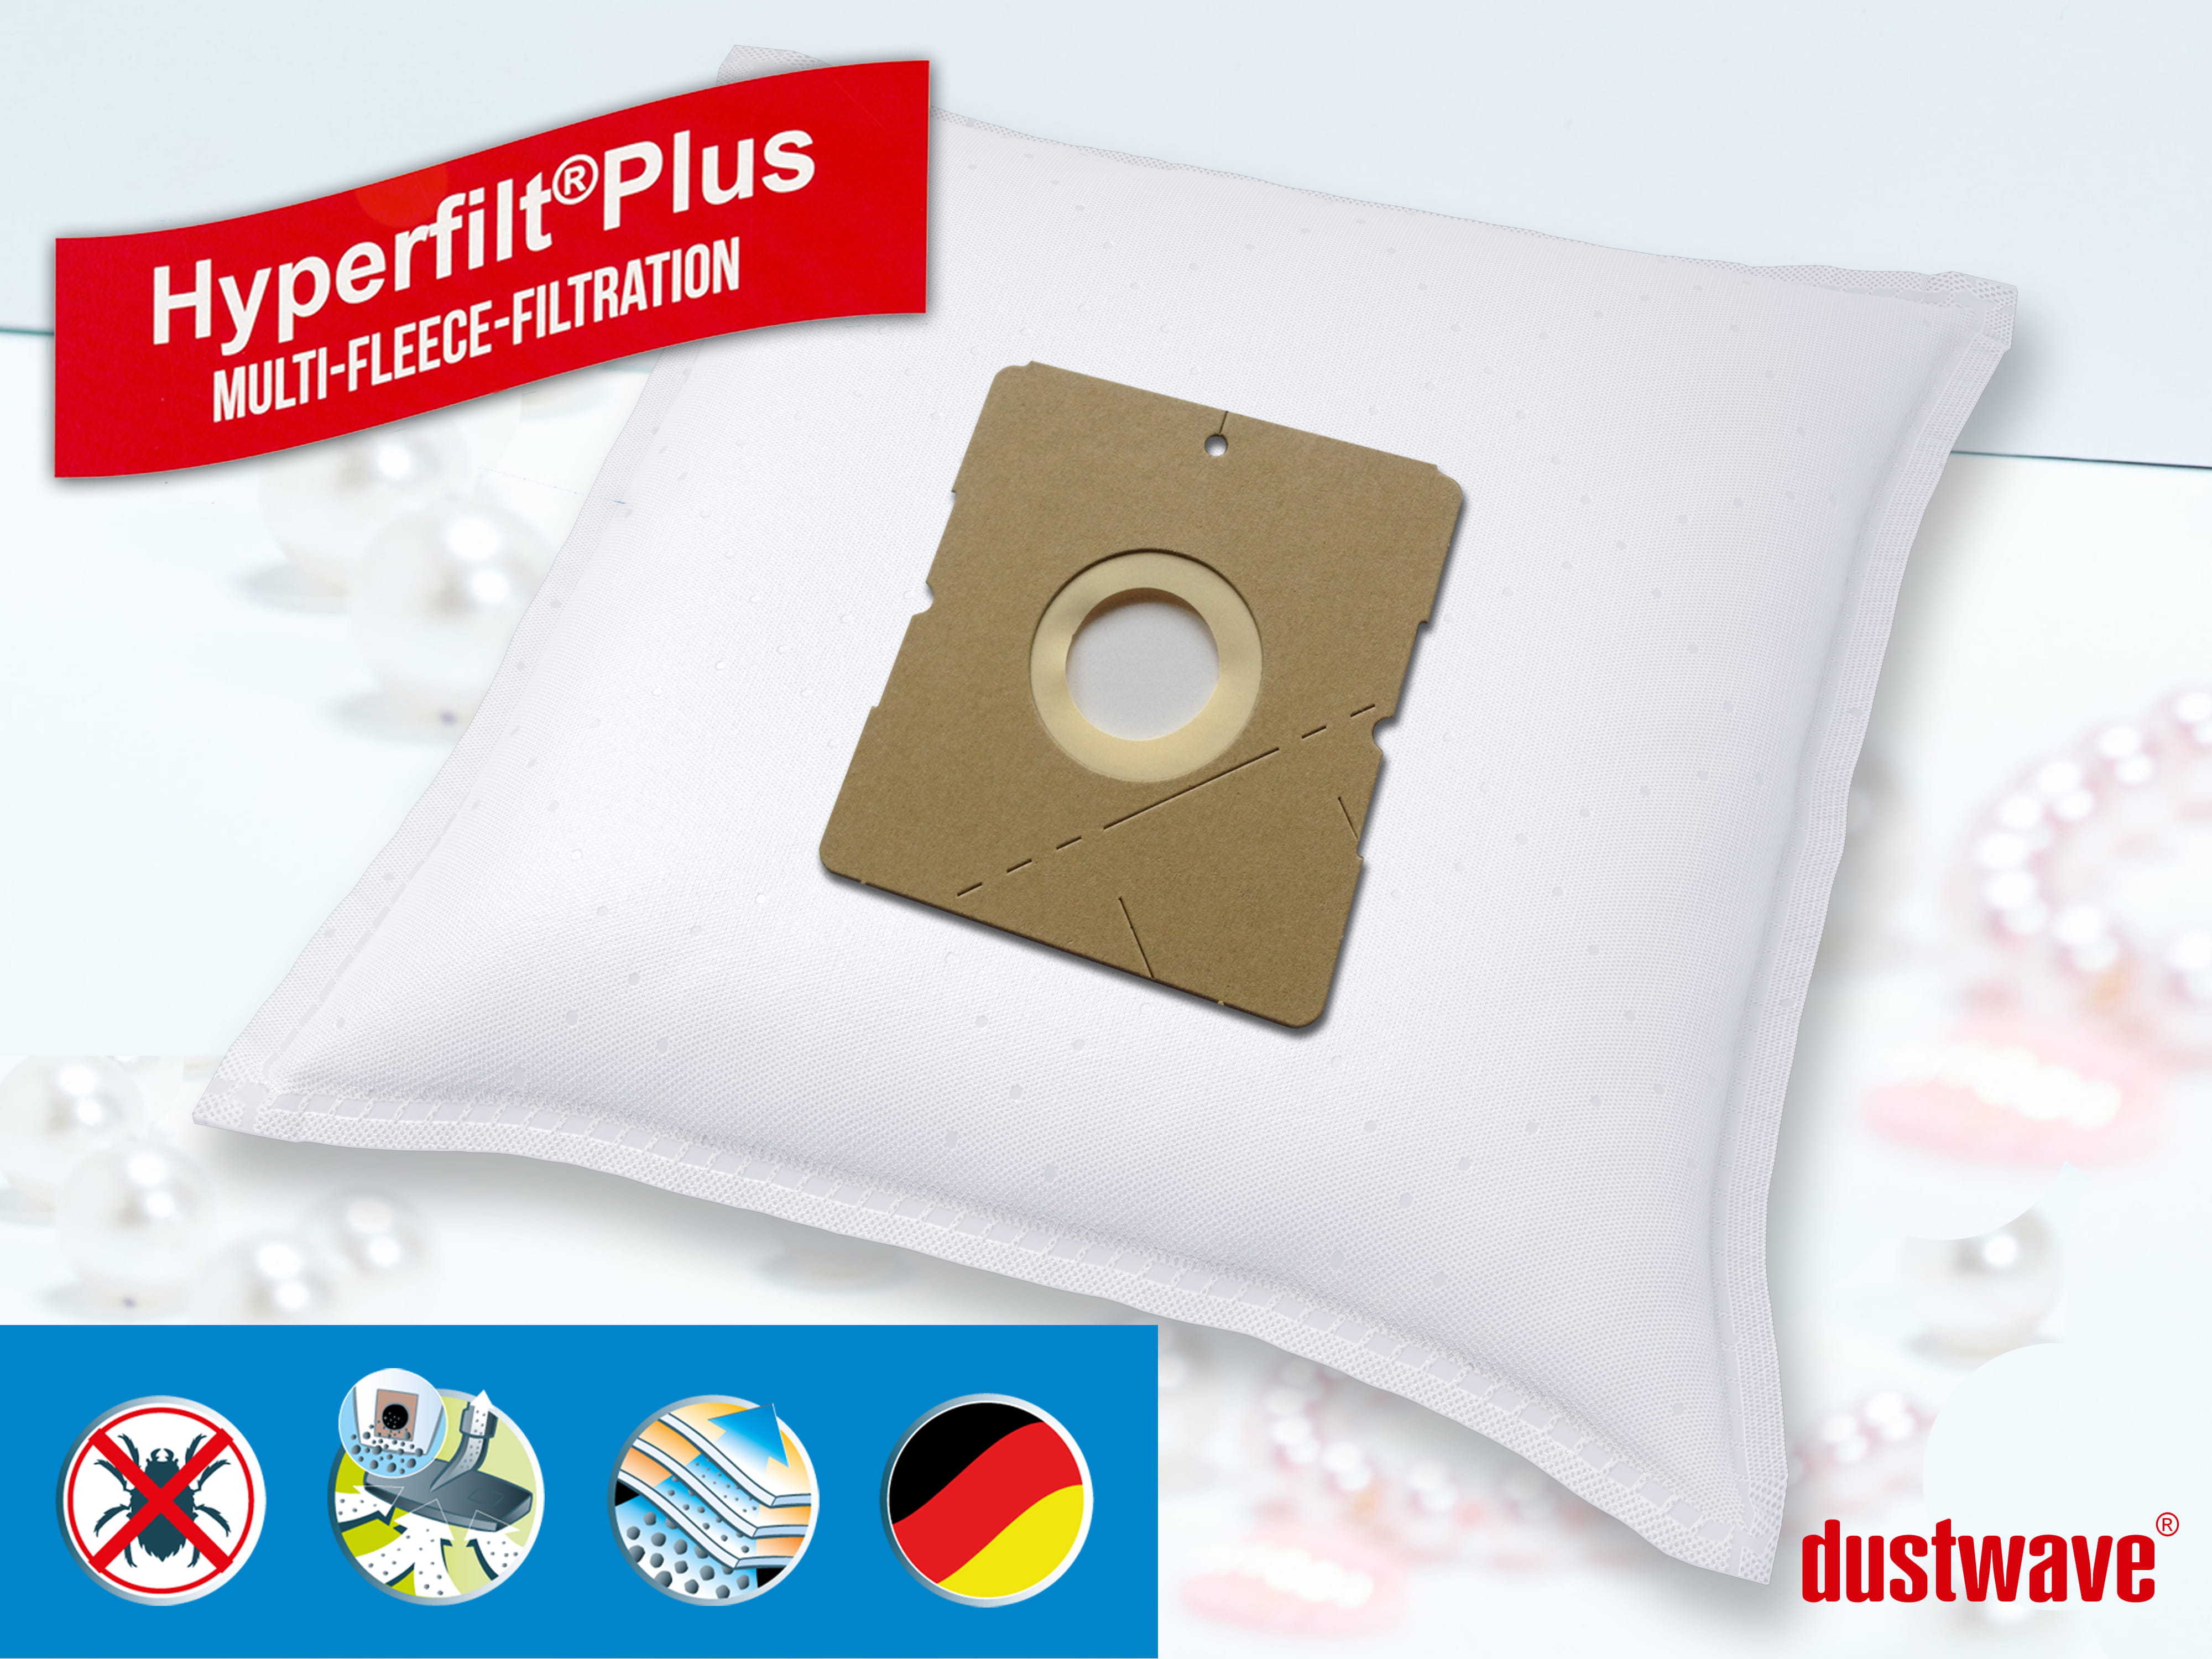 Dustwave® 10 Staubsaugerbeutel für Hoover SX9545 011 DRY - hocheffizient, mehrlagiges Mikrovlies mit Hygieneverschluss - Made in Germany